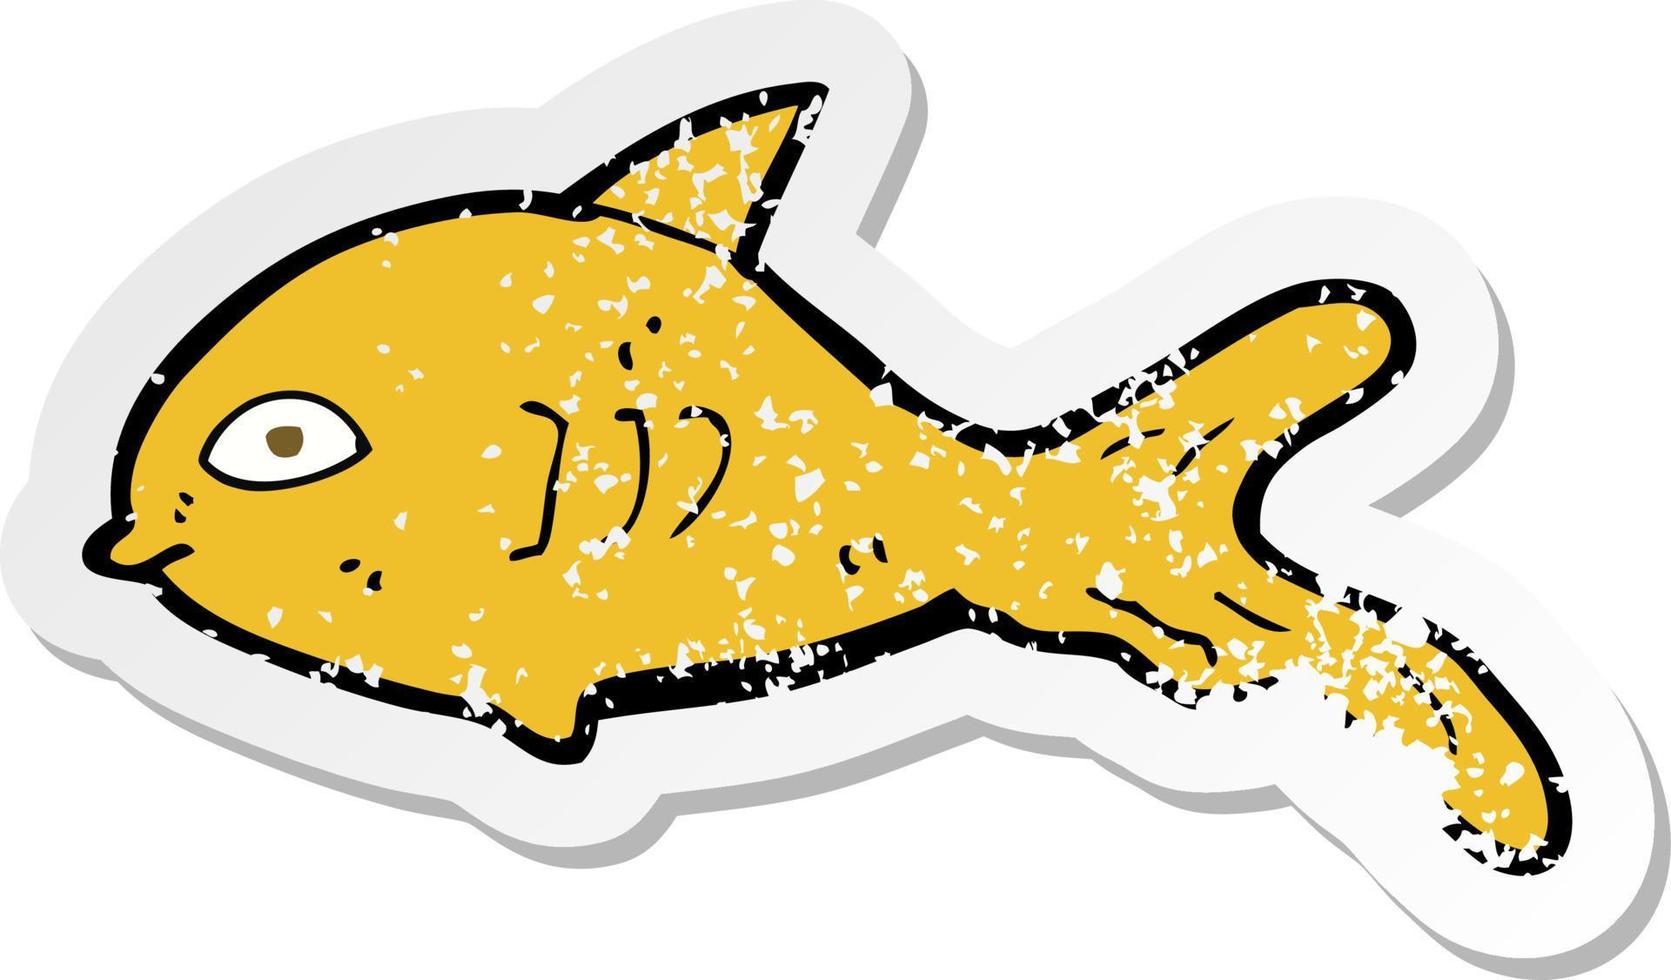 retro noodlijdende sticker van een cartoon vis vector